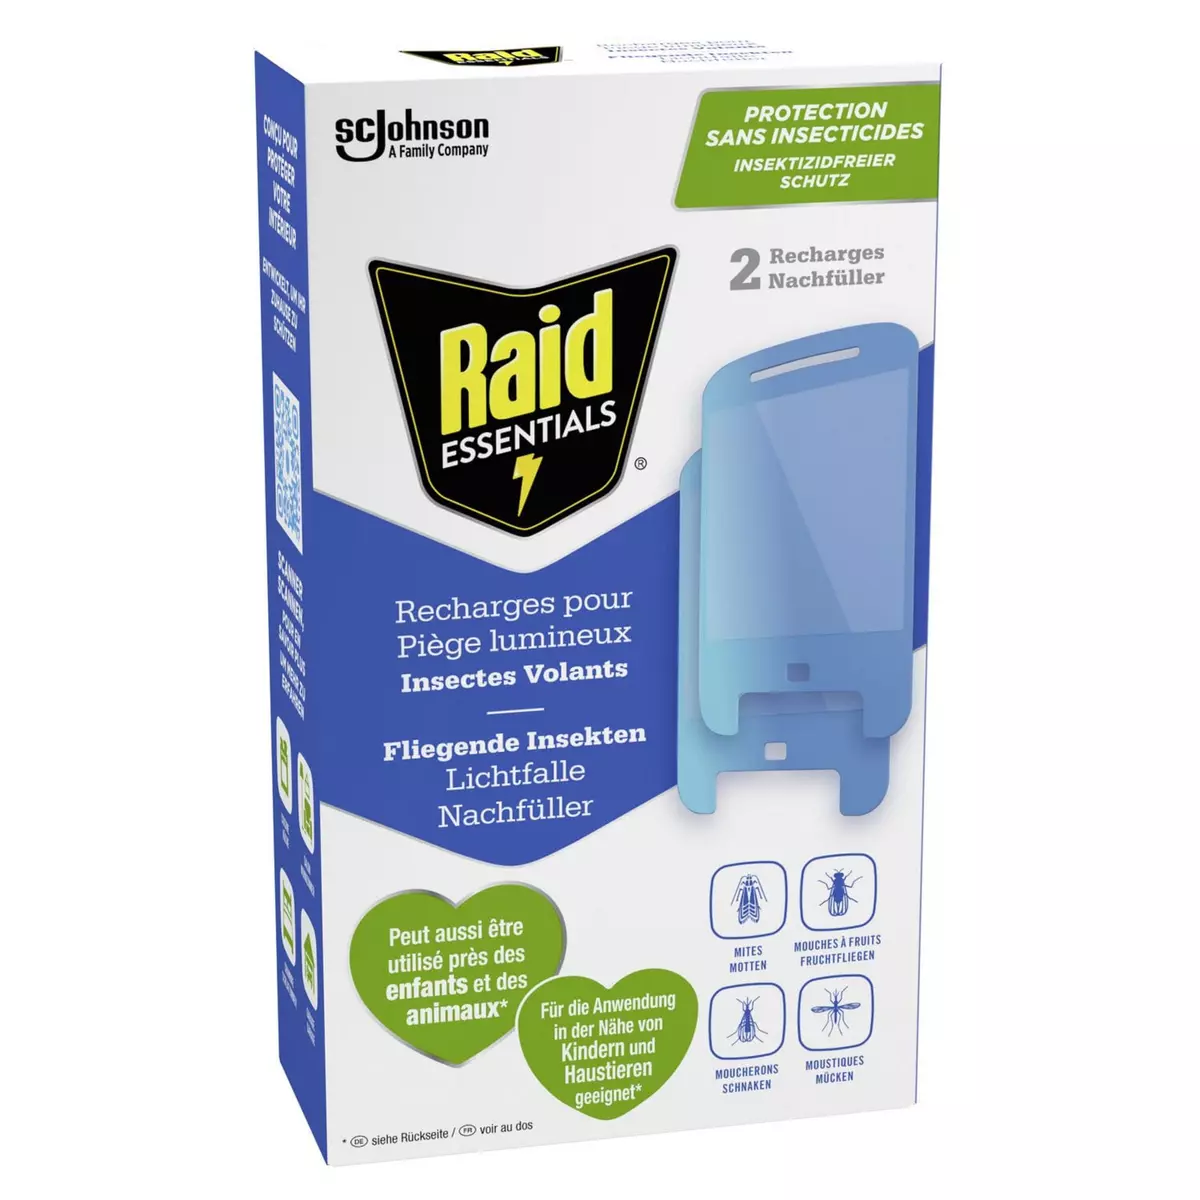 RAID Essentials Recharge pour piège lumineux contre les insectes volants 2 recharges